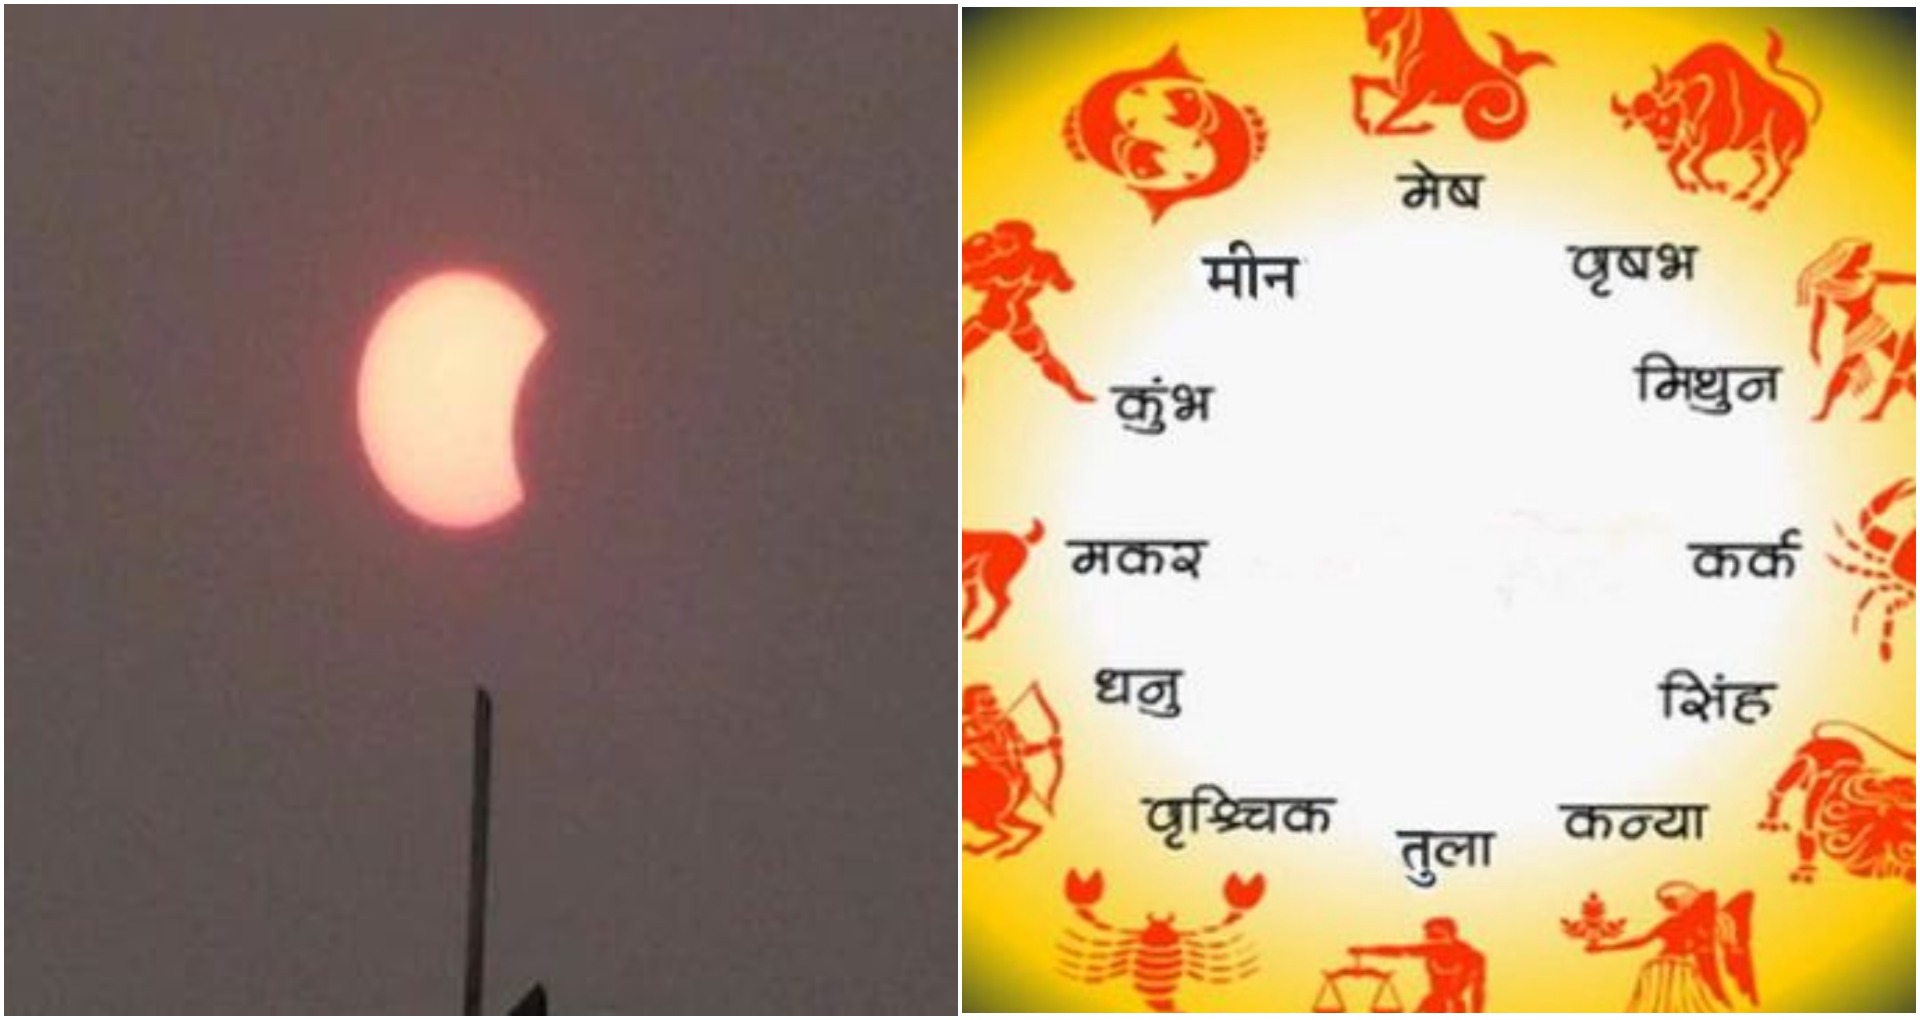 Surya Grahan 2020: इस साल का पहला सूर्य ग्रहण आज, जानिये किस राशि पर पड़ेगा बुरा प्रभाव